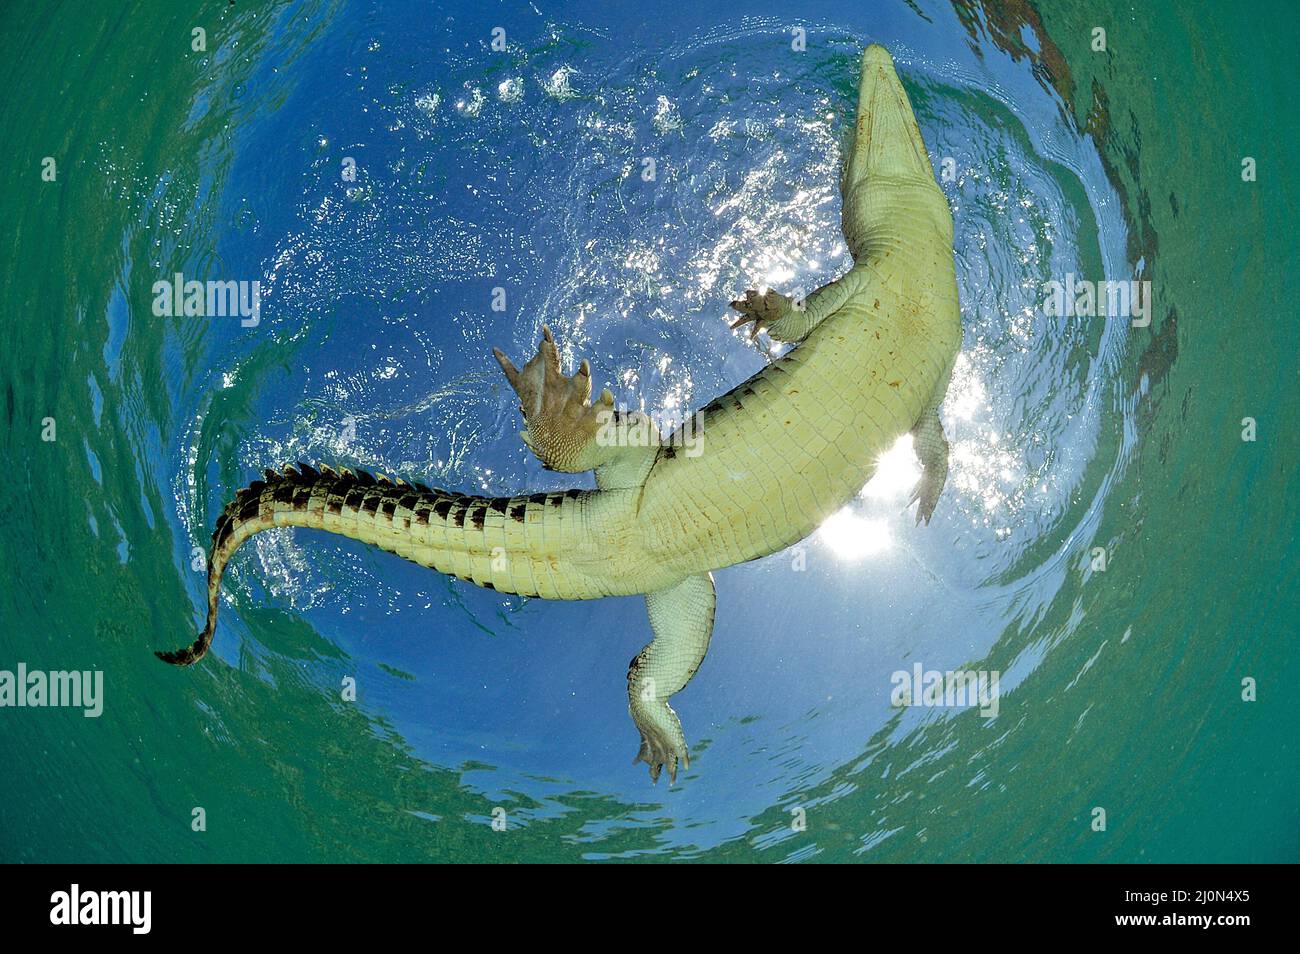 El cocodrilo de agua salada (Crocodylus porosus), el más grande de todos los reptiles vivos, Kimbe Bay, West New Britain, Papua Nueva Guinea Foto de stock